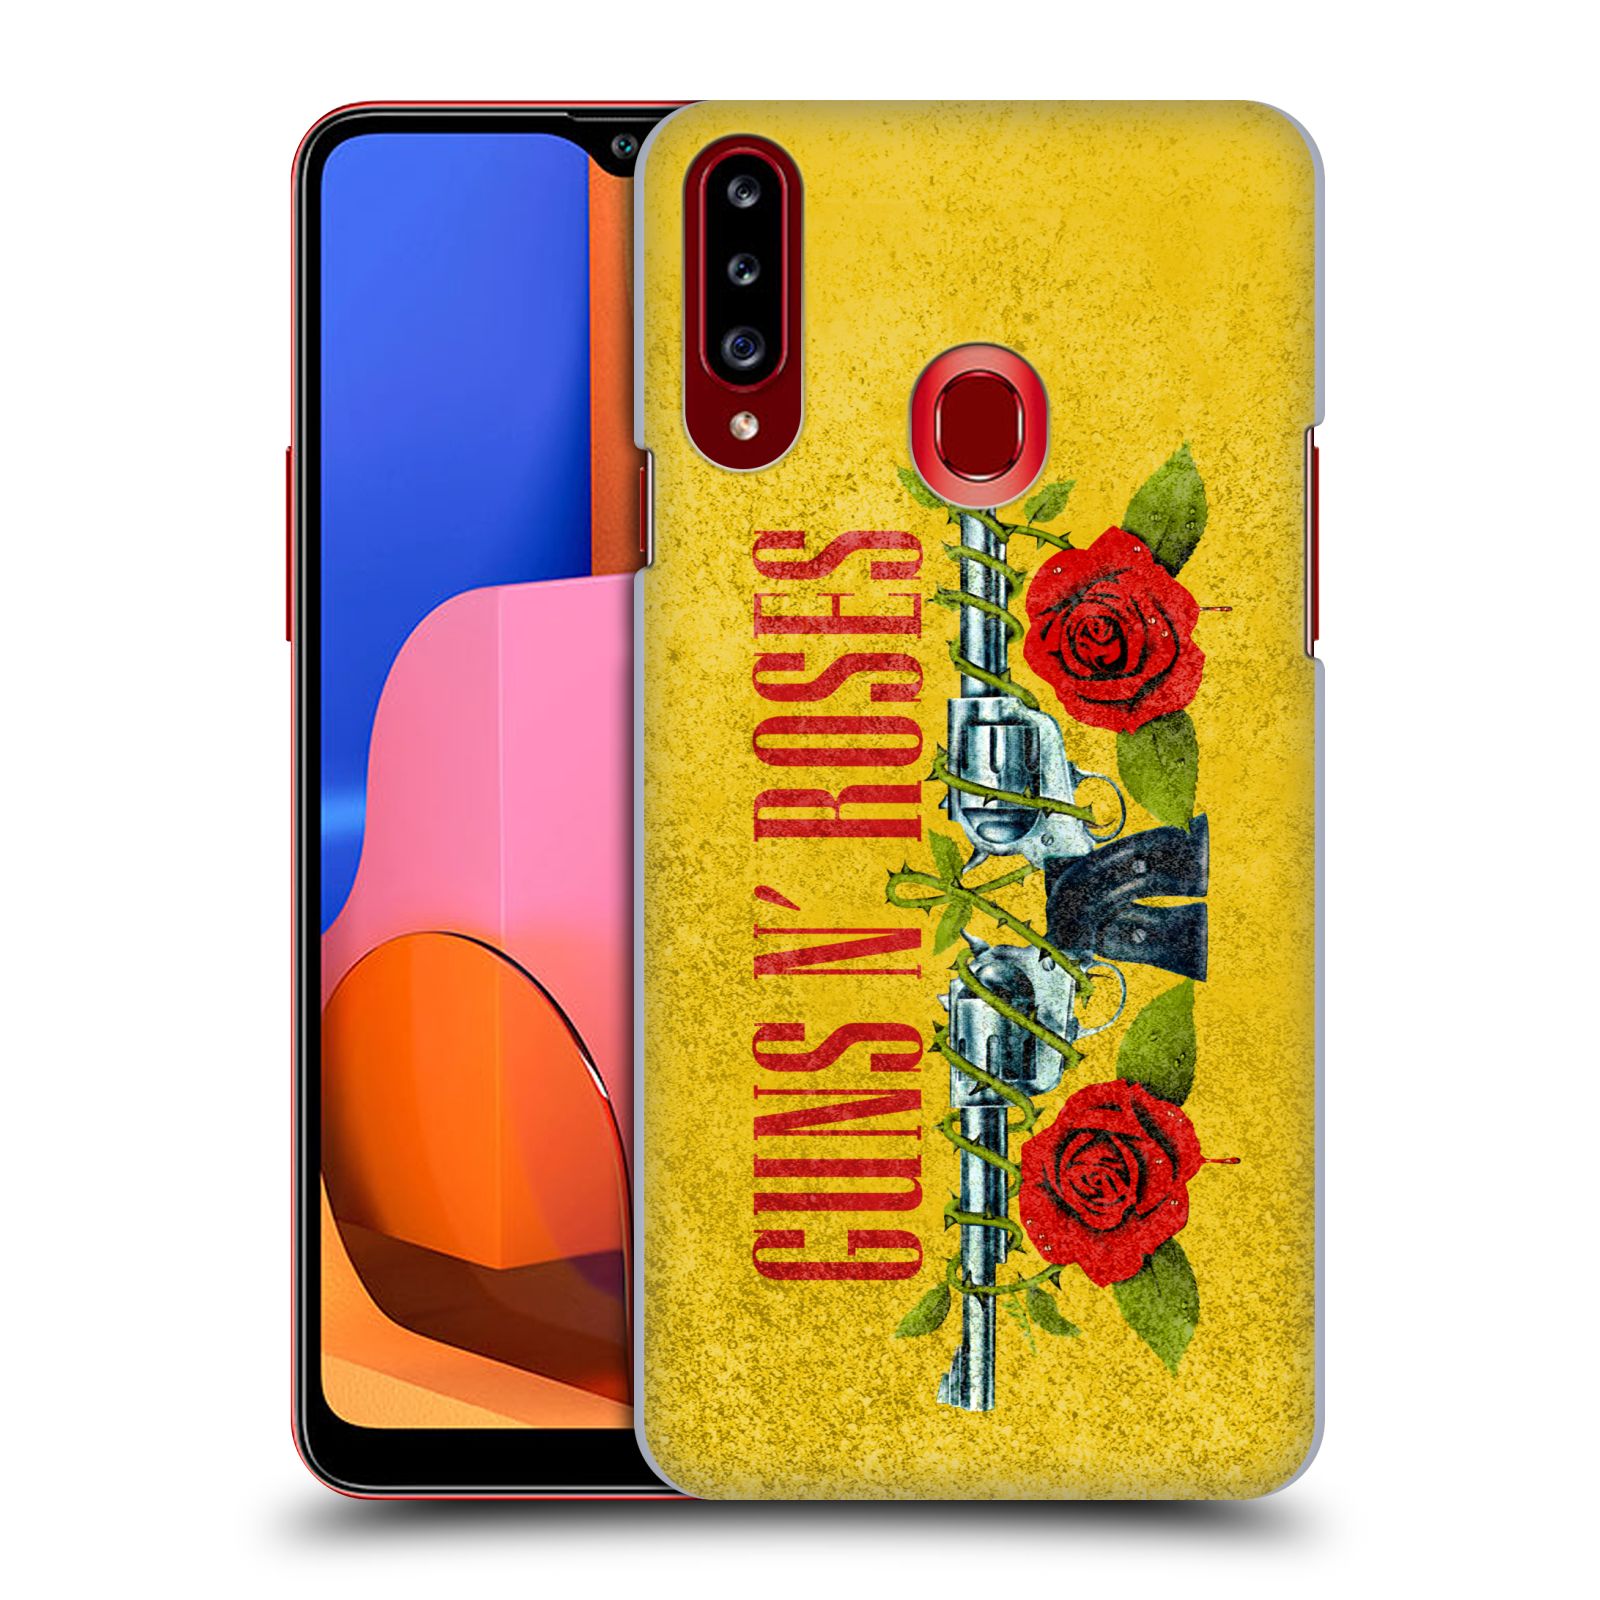 HEAD CASE plastový obal na mobil Samsung Galaxy A20s hudební skupina Guns N Roses pistole a růže žluté pozadí